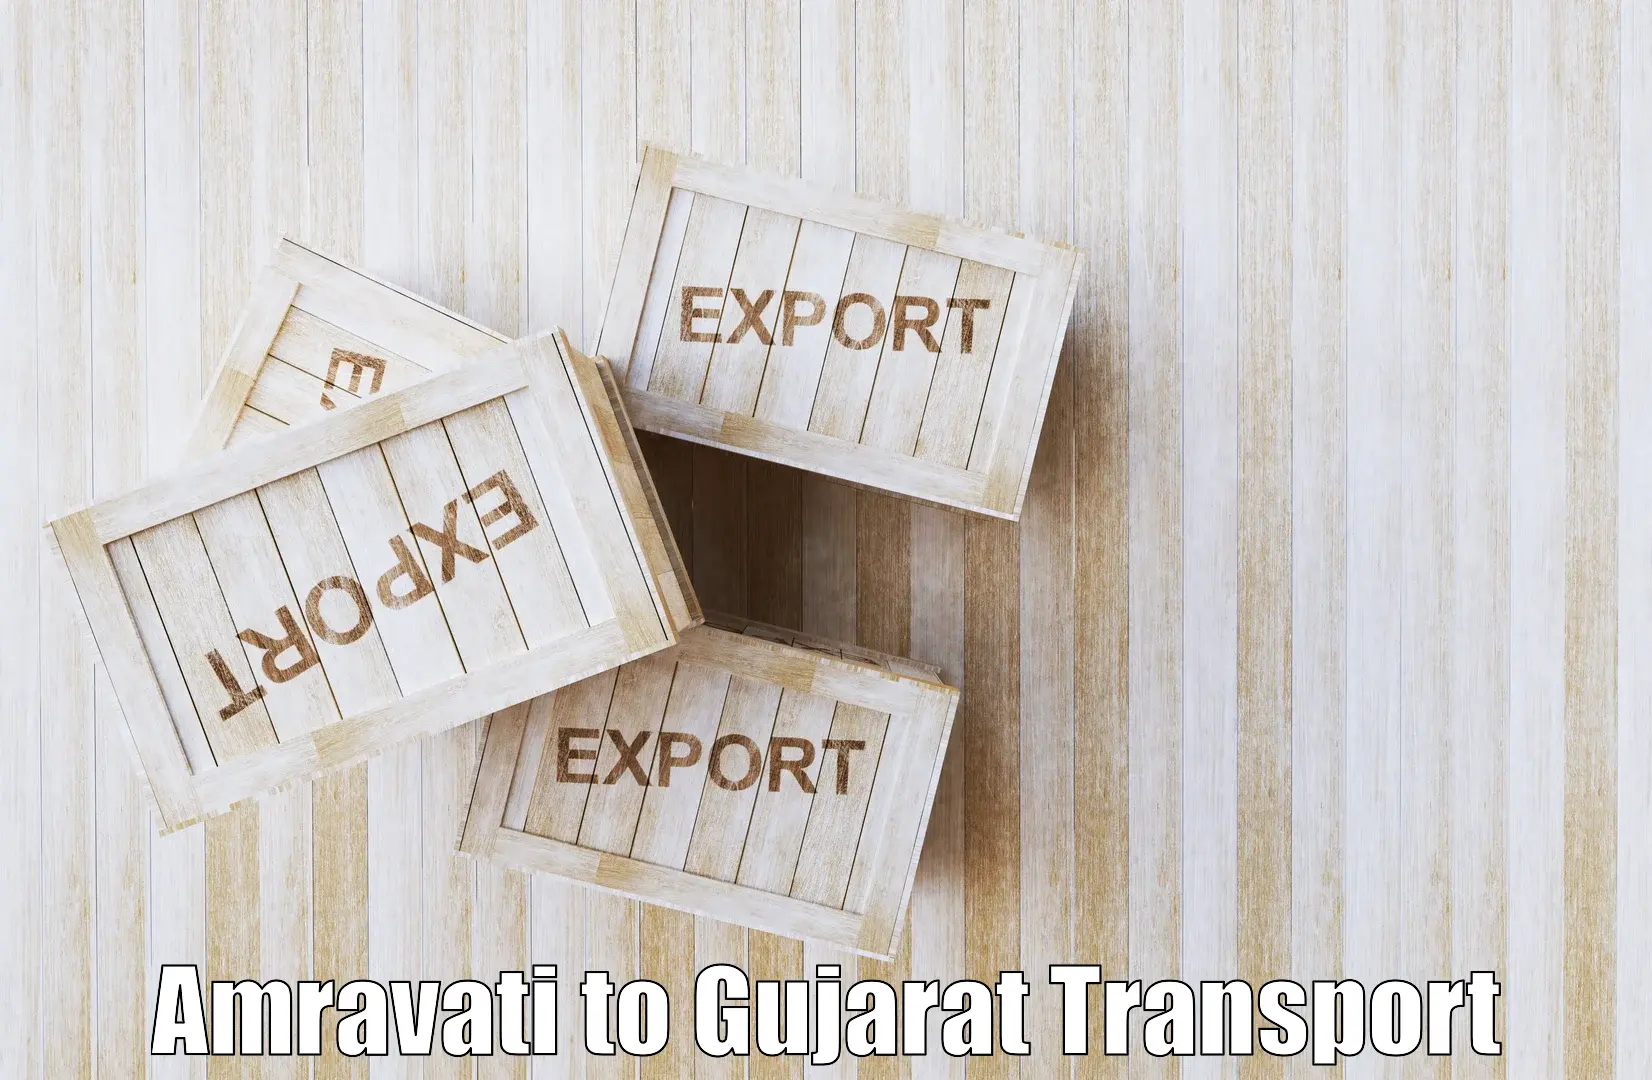 Nearest transport service Amravati to IIIT Vadodara